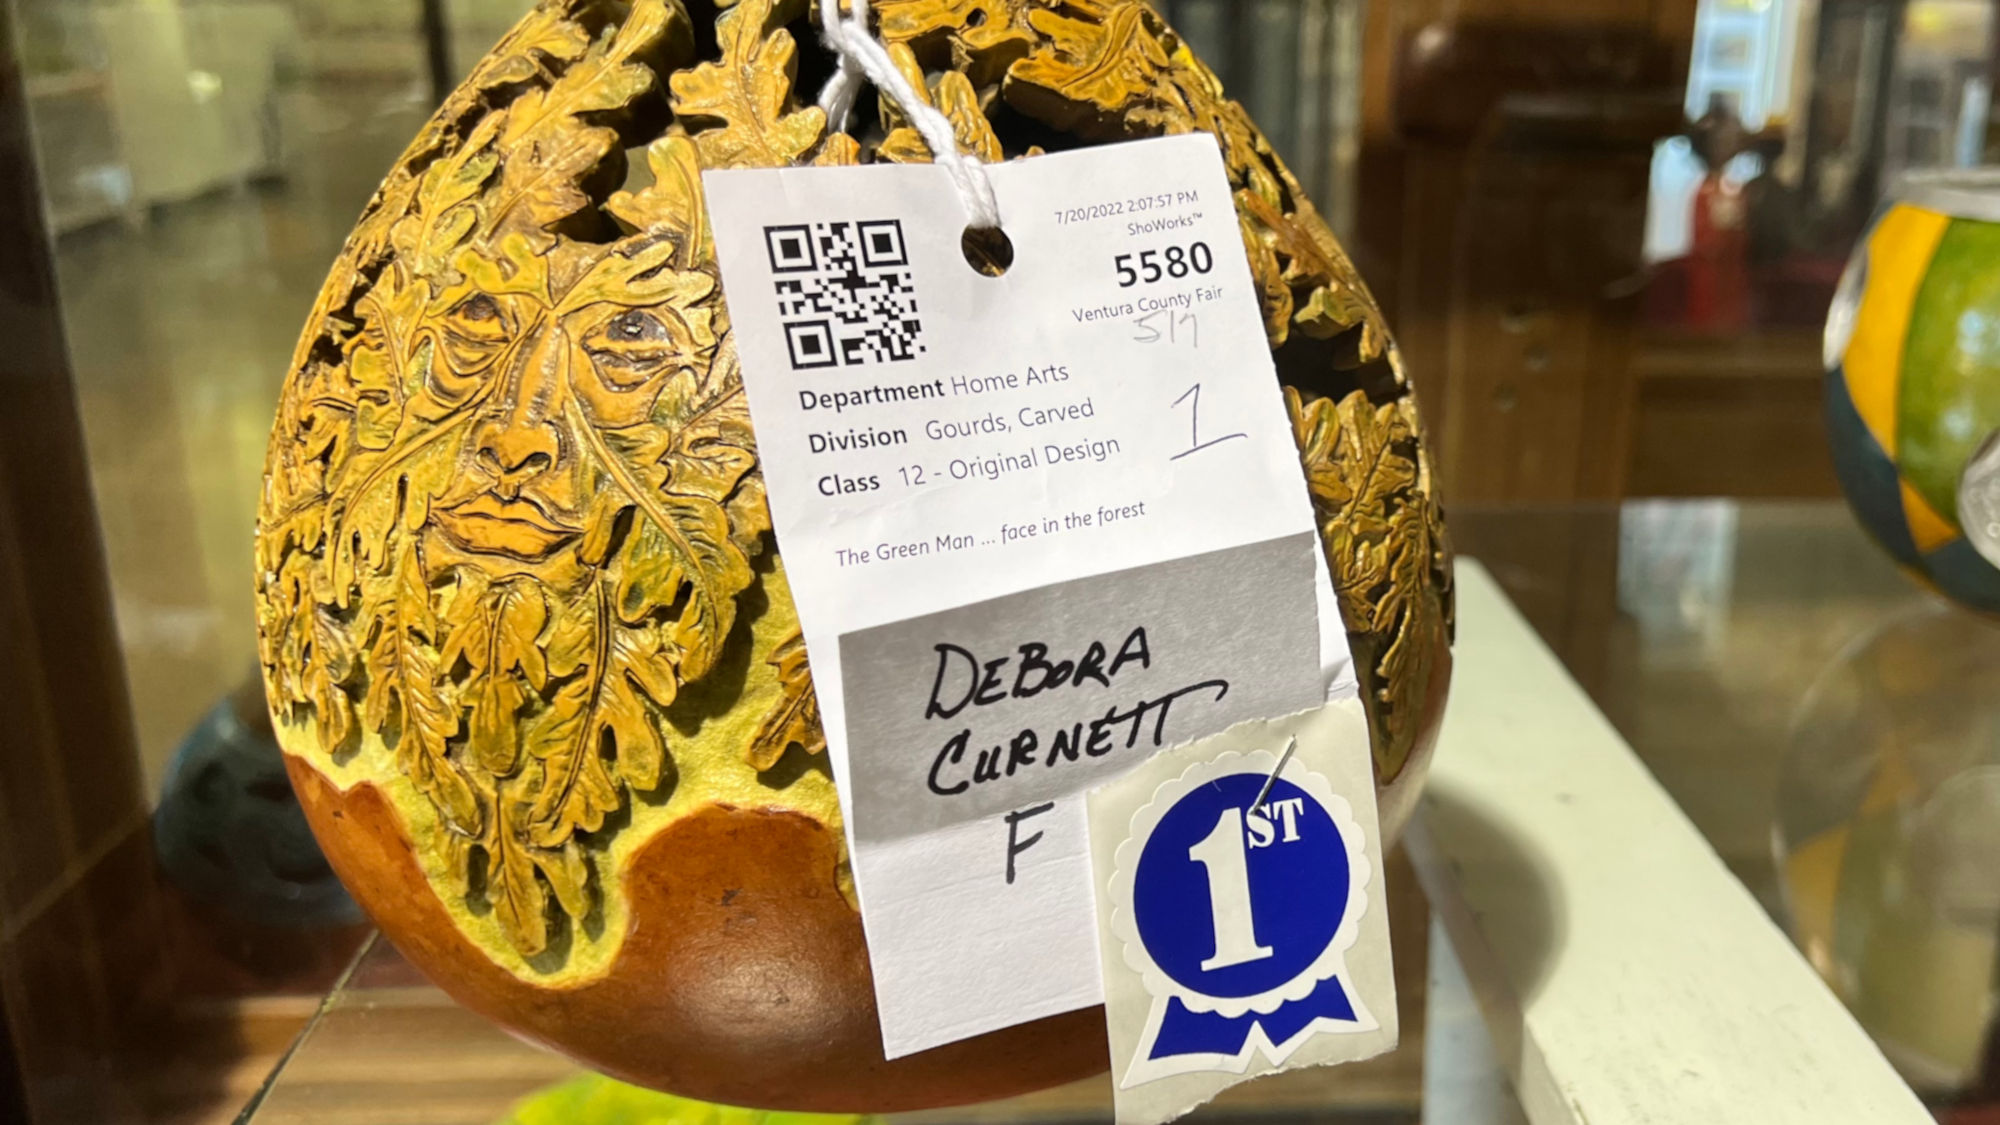 Gourds Debora Curnett